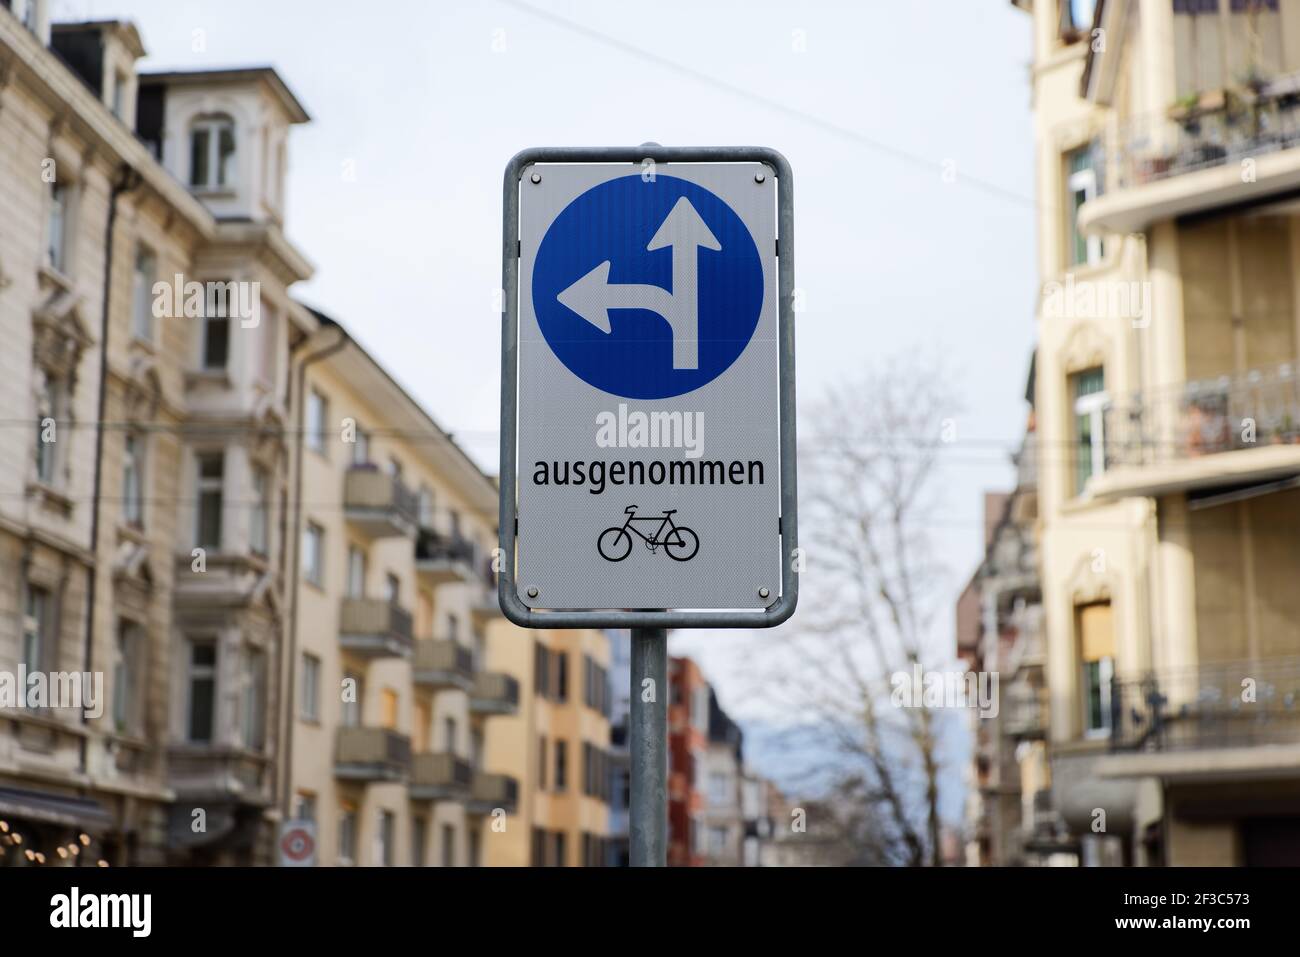 signalisation routière, traduction en allemand : direction de déplacement prescrite, droit devant et gauche, sauf bicyclettes Banque D'Images